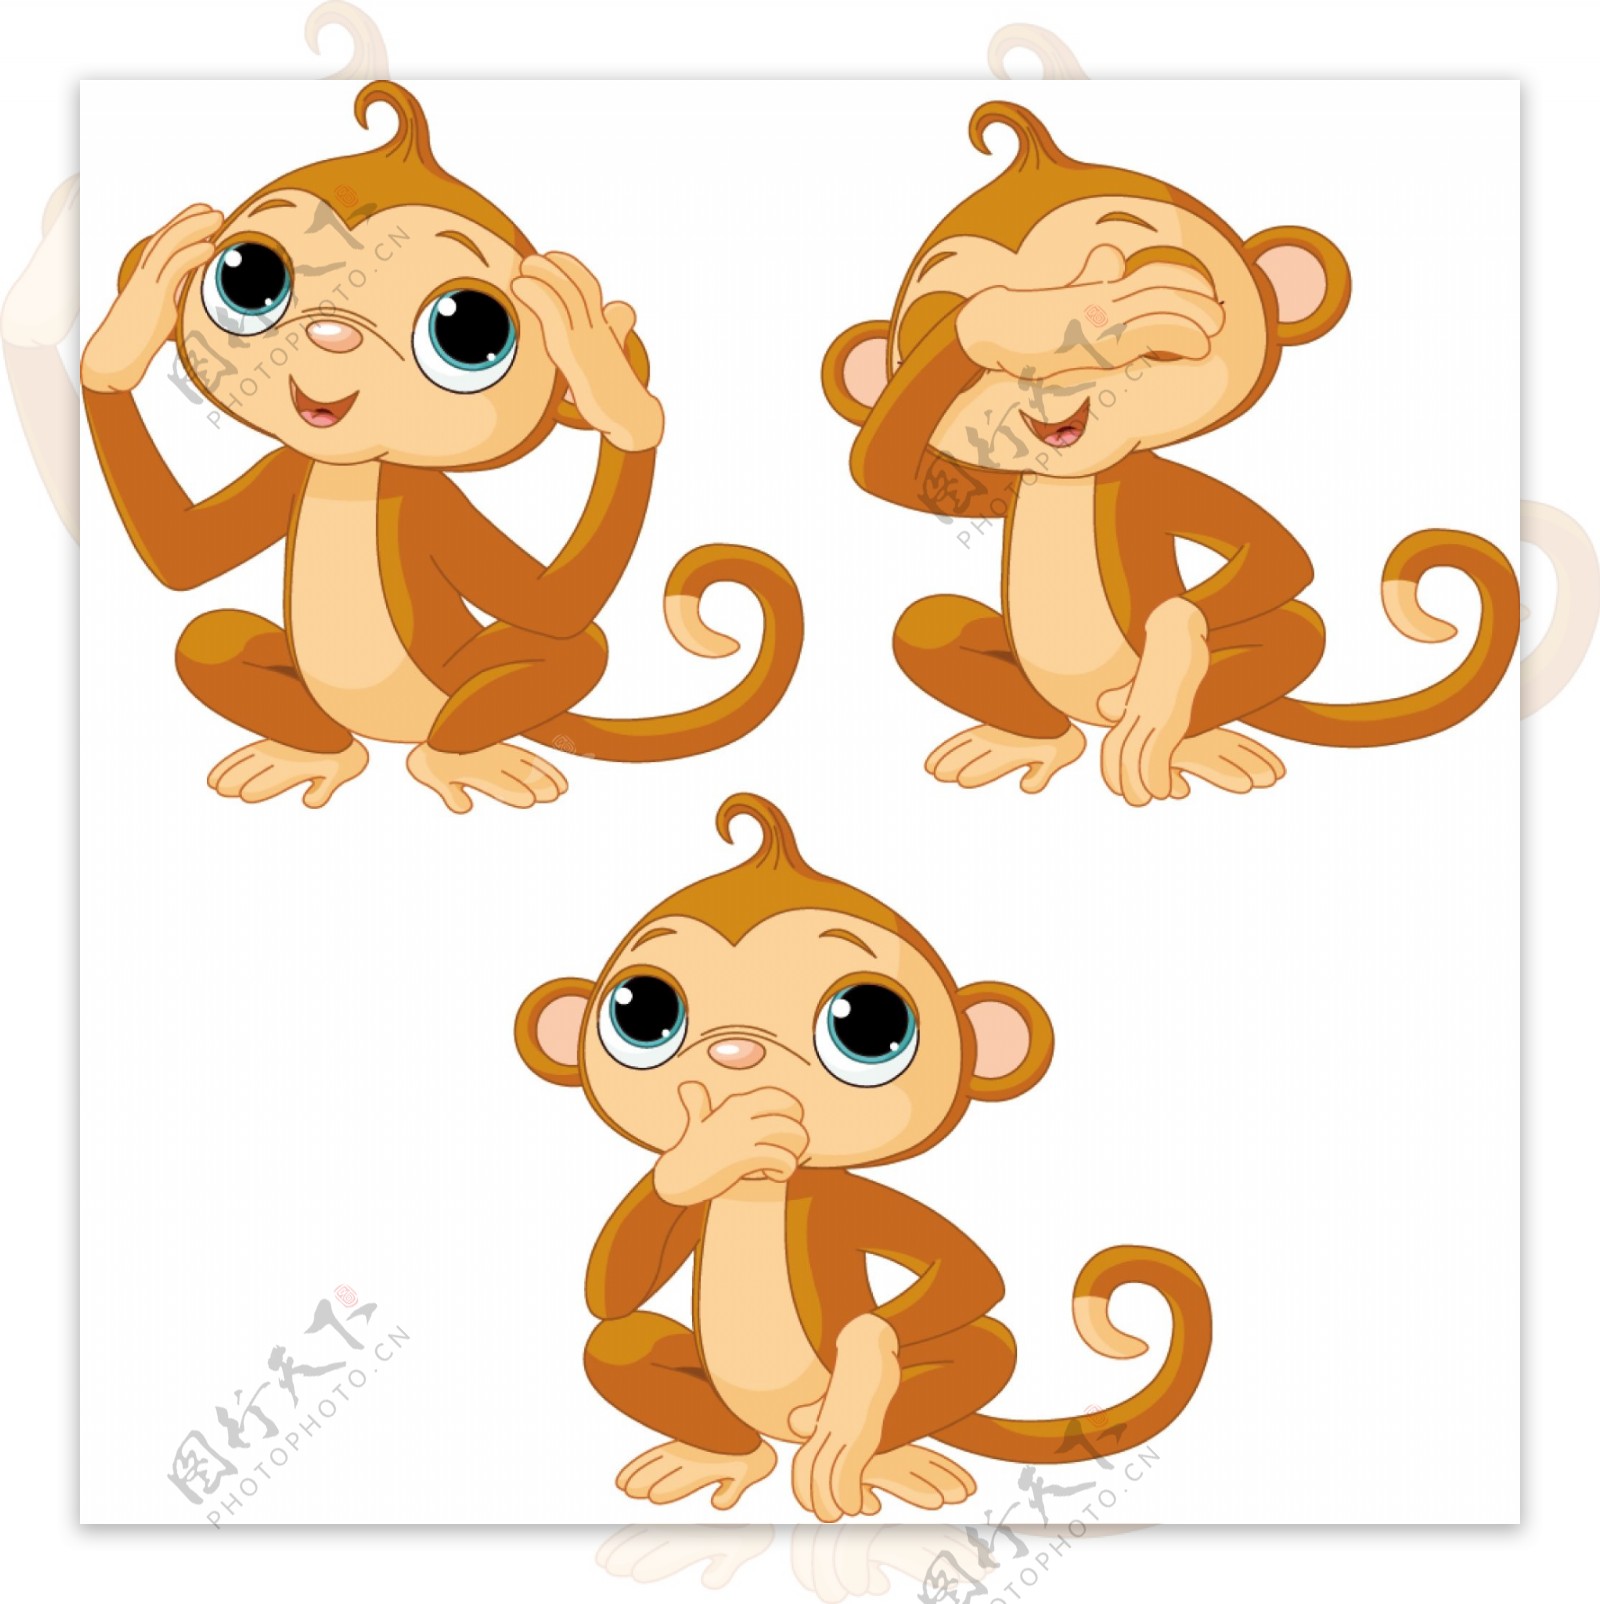 猴子卡通图像01矢量素材